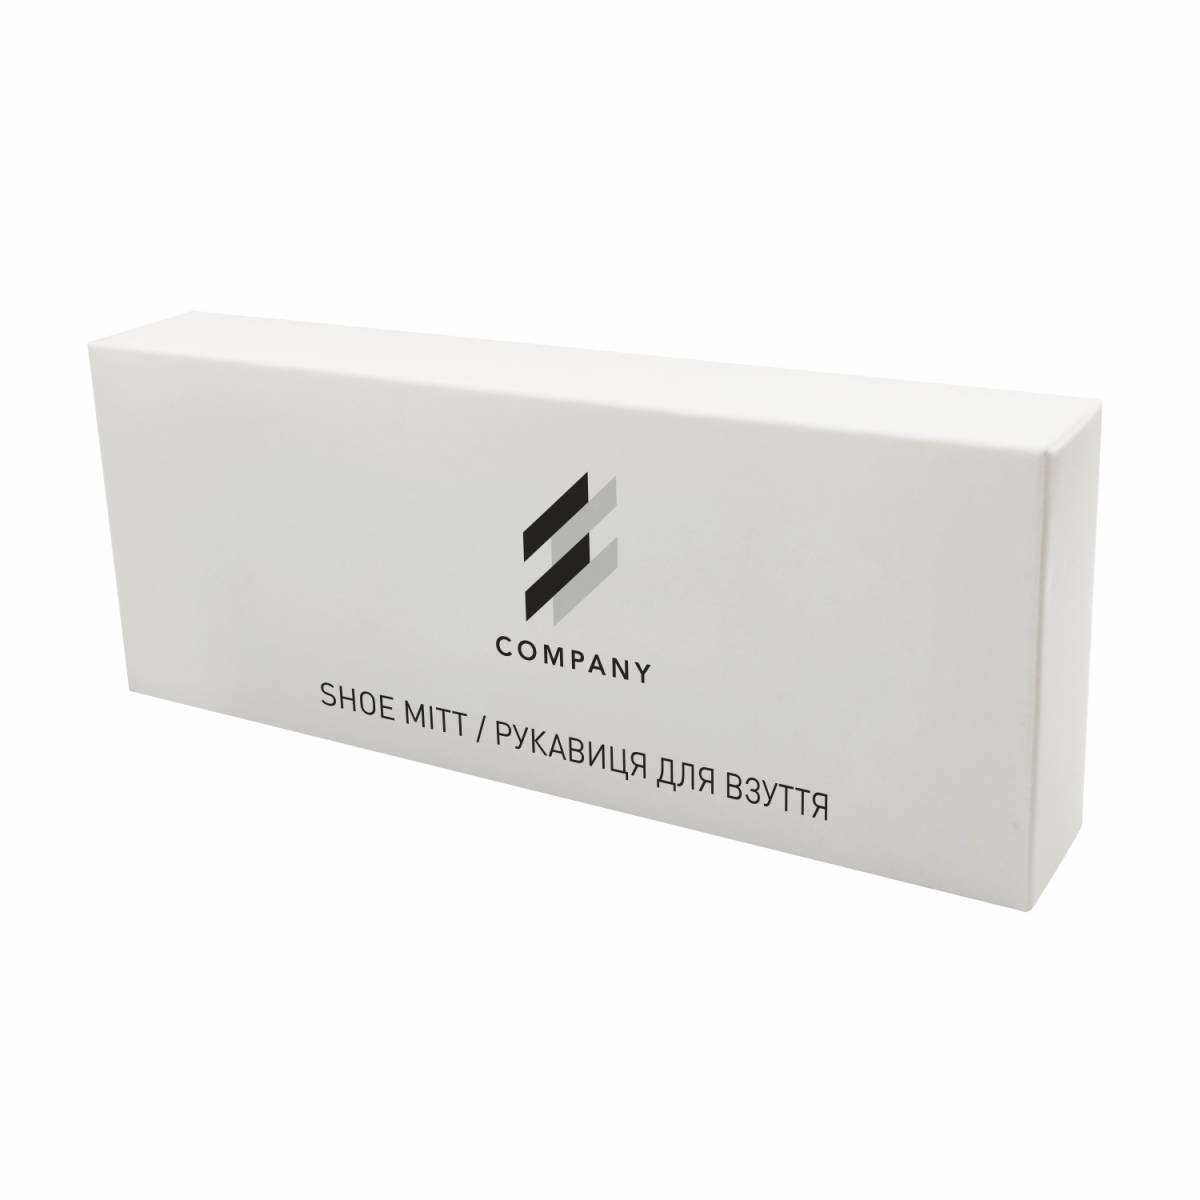 Рукавиця для полірування взуття в коробочці з білого картону з логотипом LW-SM1 HSG